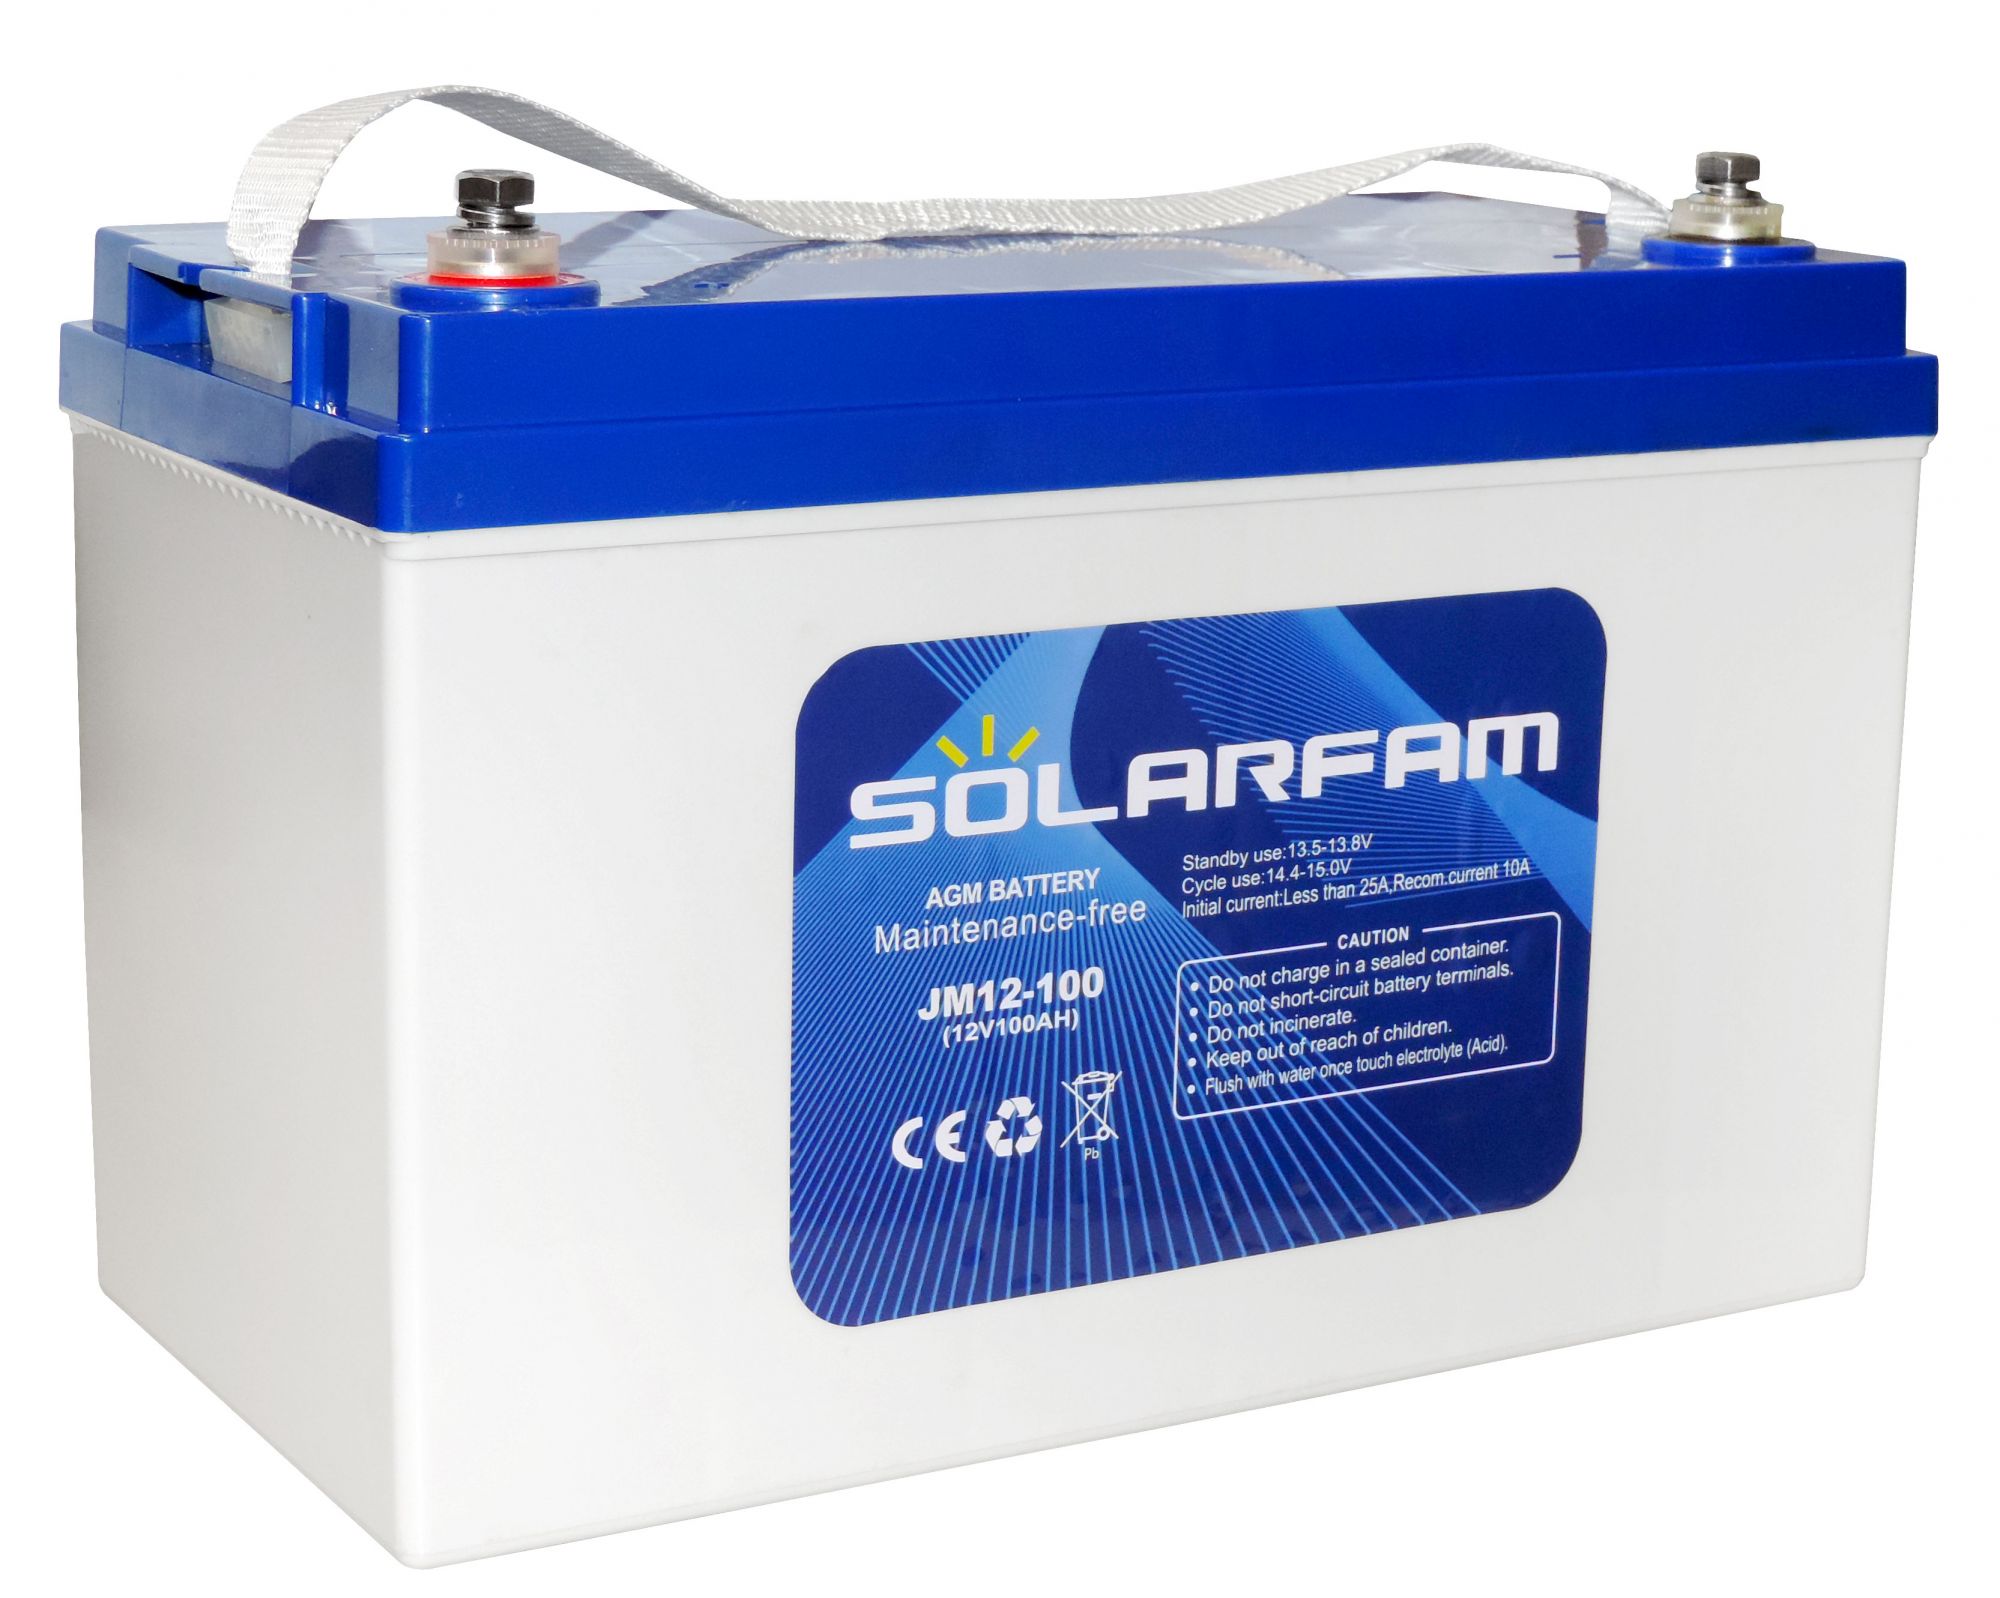 100Ah Battery 12V C10 SOLARFAM Wind Photovoltaic #N51120050931 AGM Systems Solar